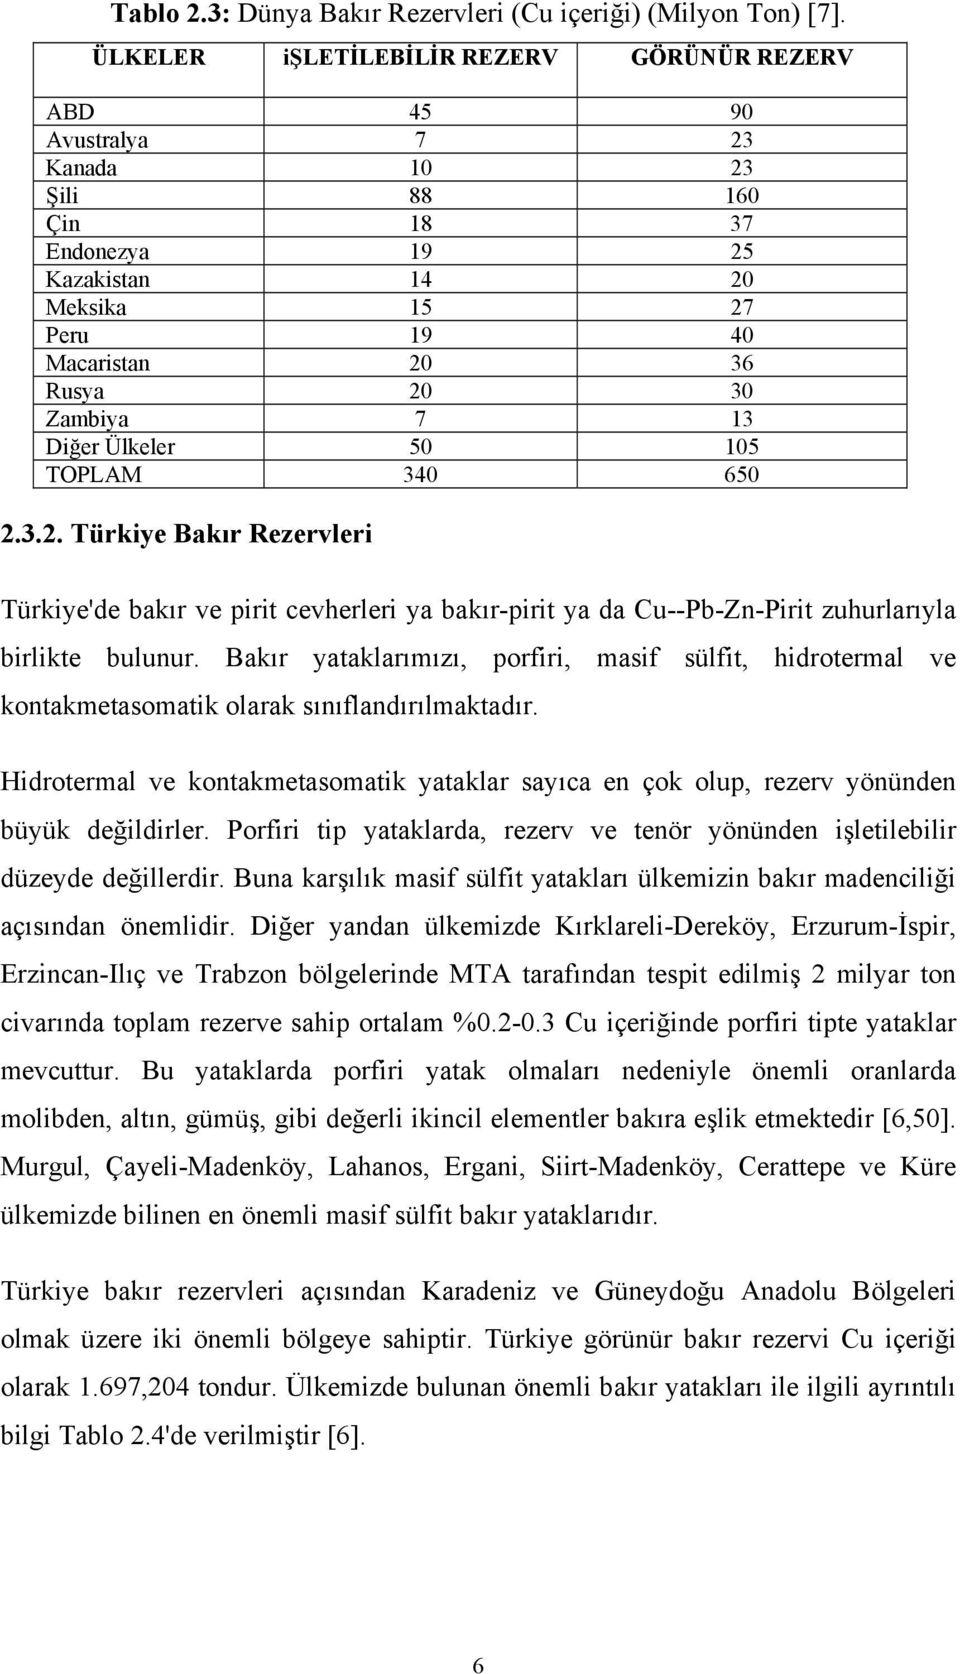 7 13 Diğer Ülkeler 50 105 TOPLAM 340 650 2.3.2. Türkiye Bakır Rezervleri Türkiye'de bakır ve pirit cevherleri ya bakır-pirit ya da Cu--Pb-Zn-Pirit zuhurlarıyla birlikte bulunur.